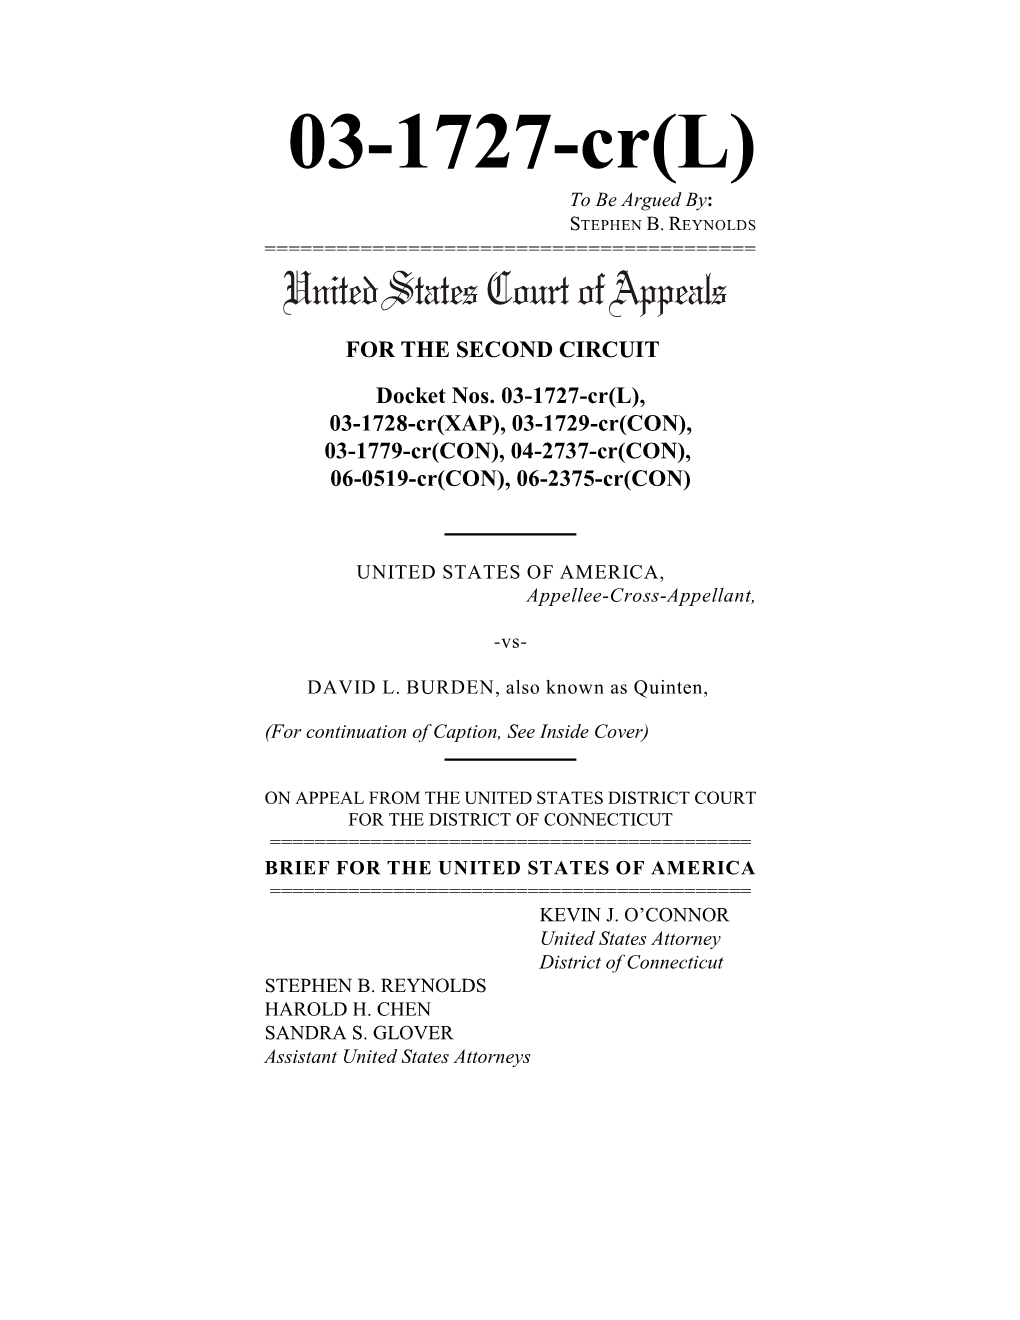 August 15, 2007 US V. Burden 2Nd Circuit Brief